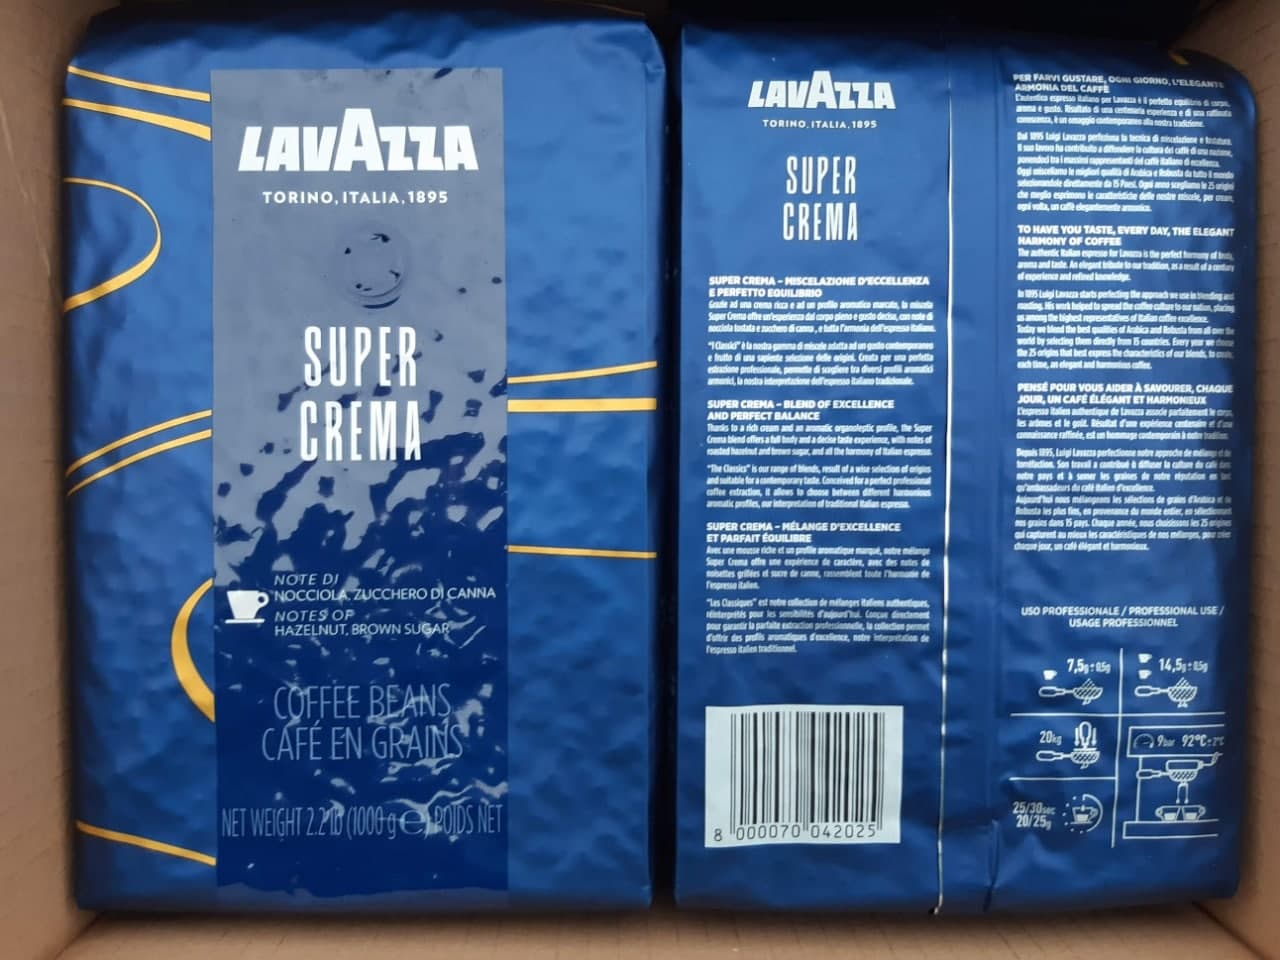 Kohvioad "LAVAZZA" Classic Collection Super Crema